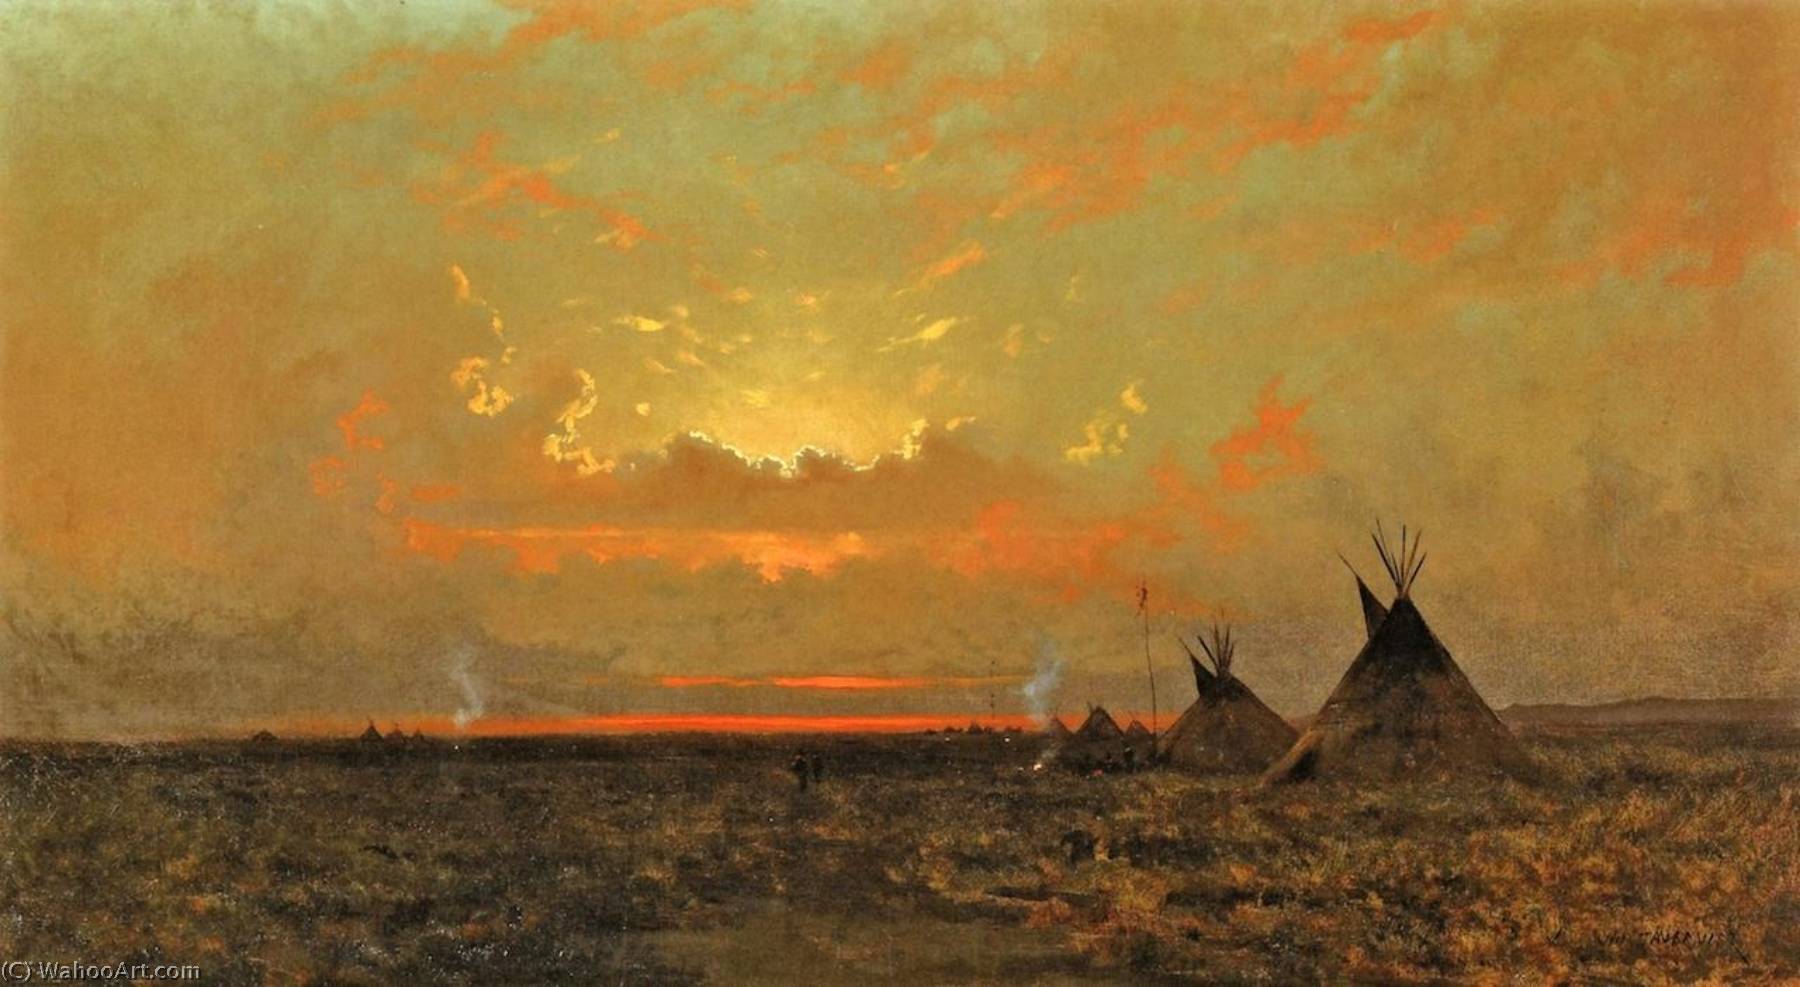 WikiOO.org - Enciclopédia das Belas Artes - Pintura, Arte por Jules Tavernier - Indian Encampment at Dusk